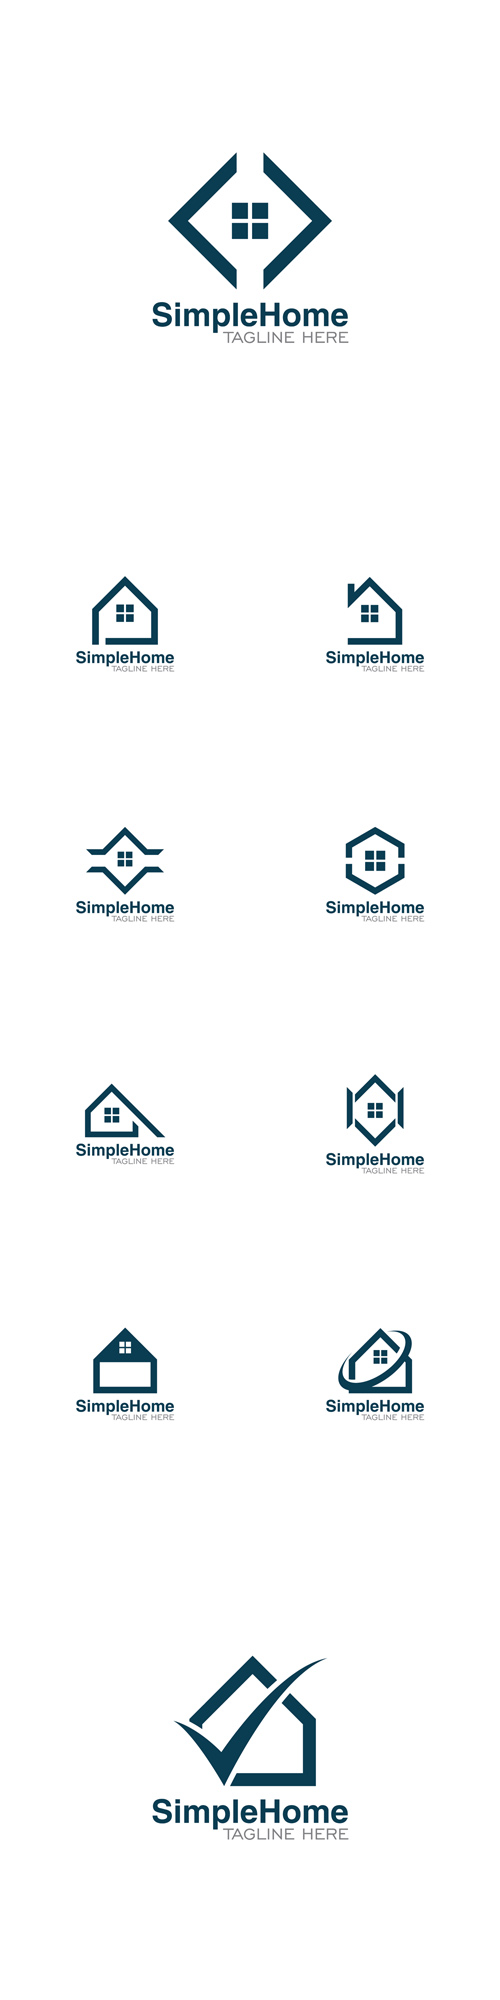 Vector Simple Home Creative Concept Logo Design